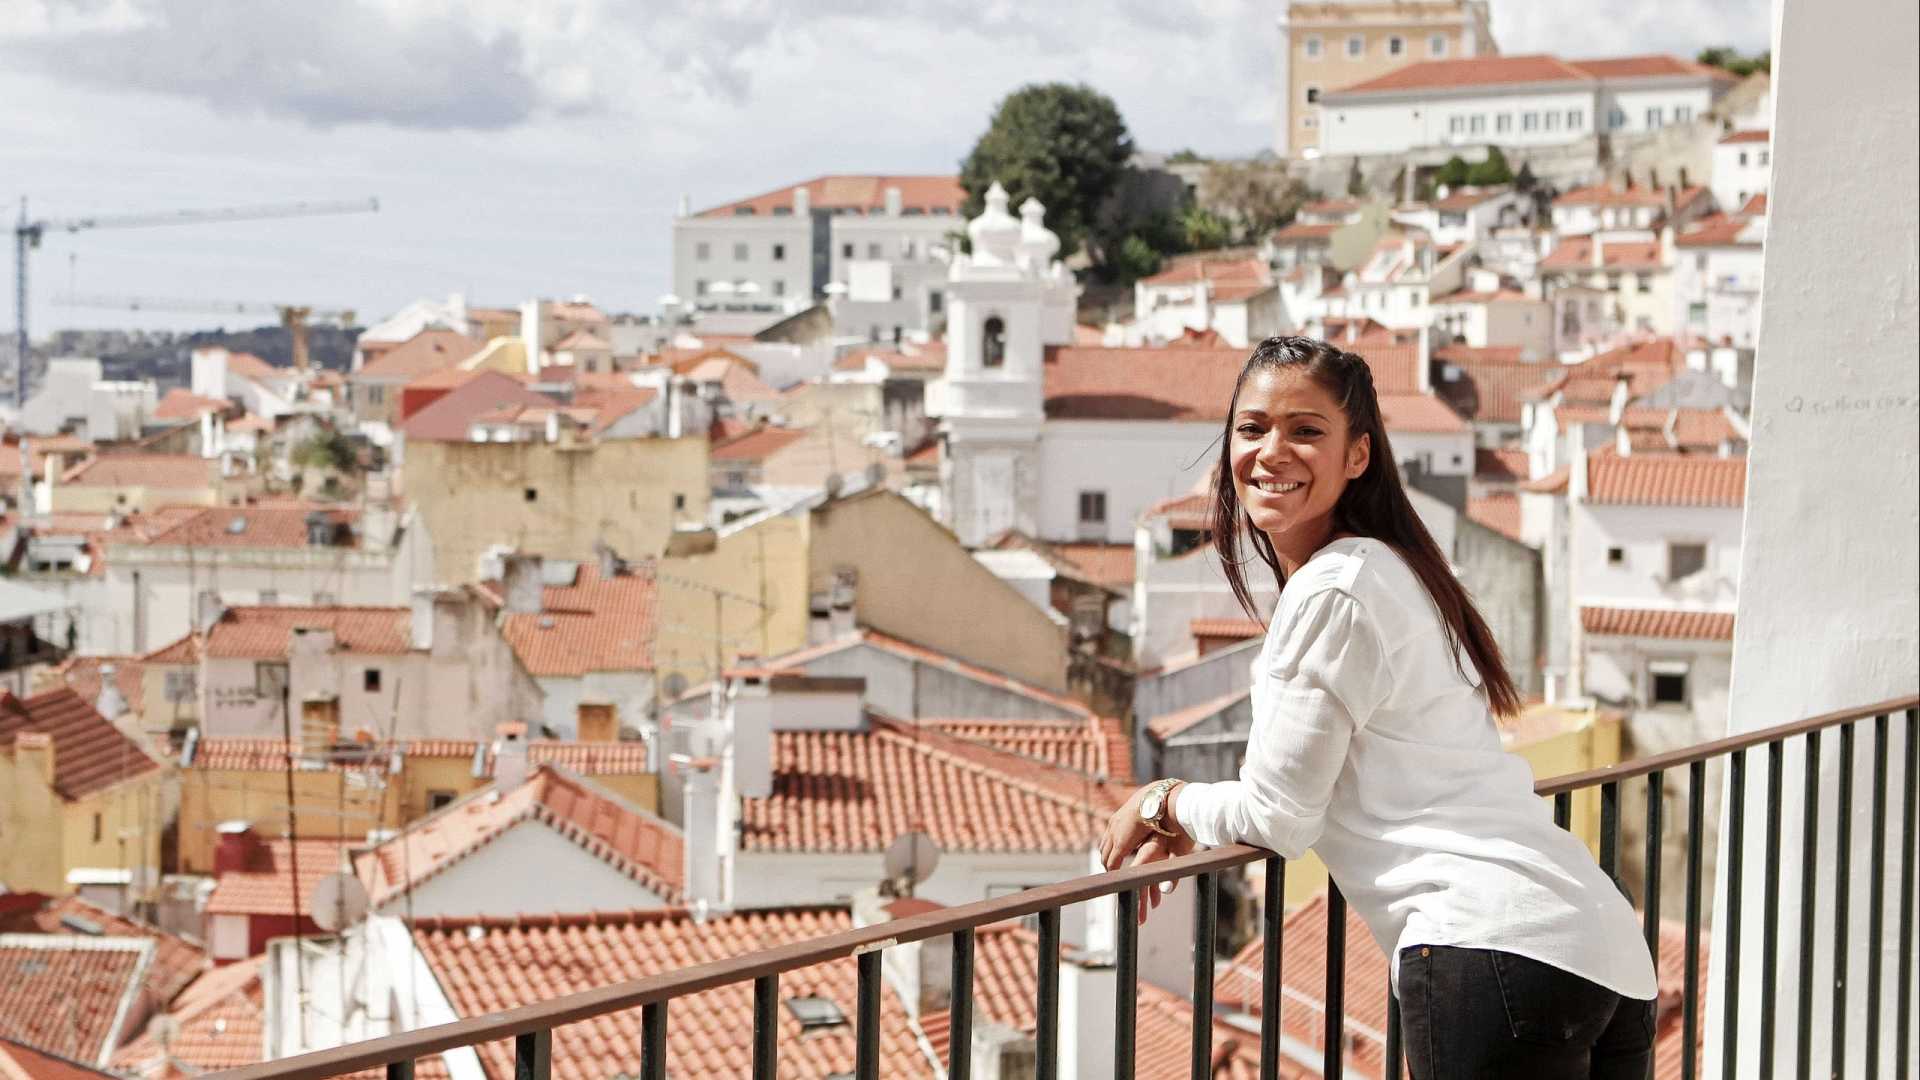 Turismo em Portugal